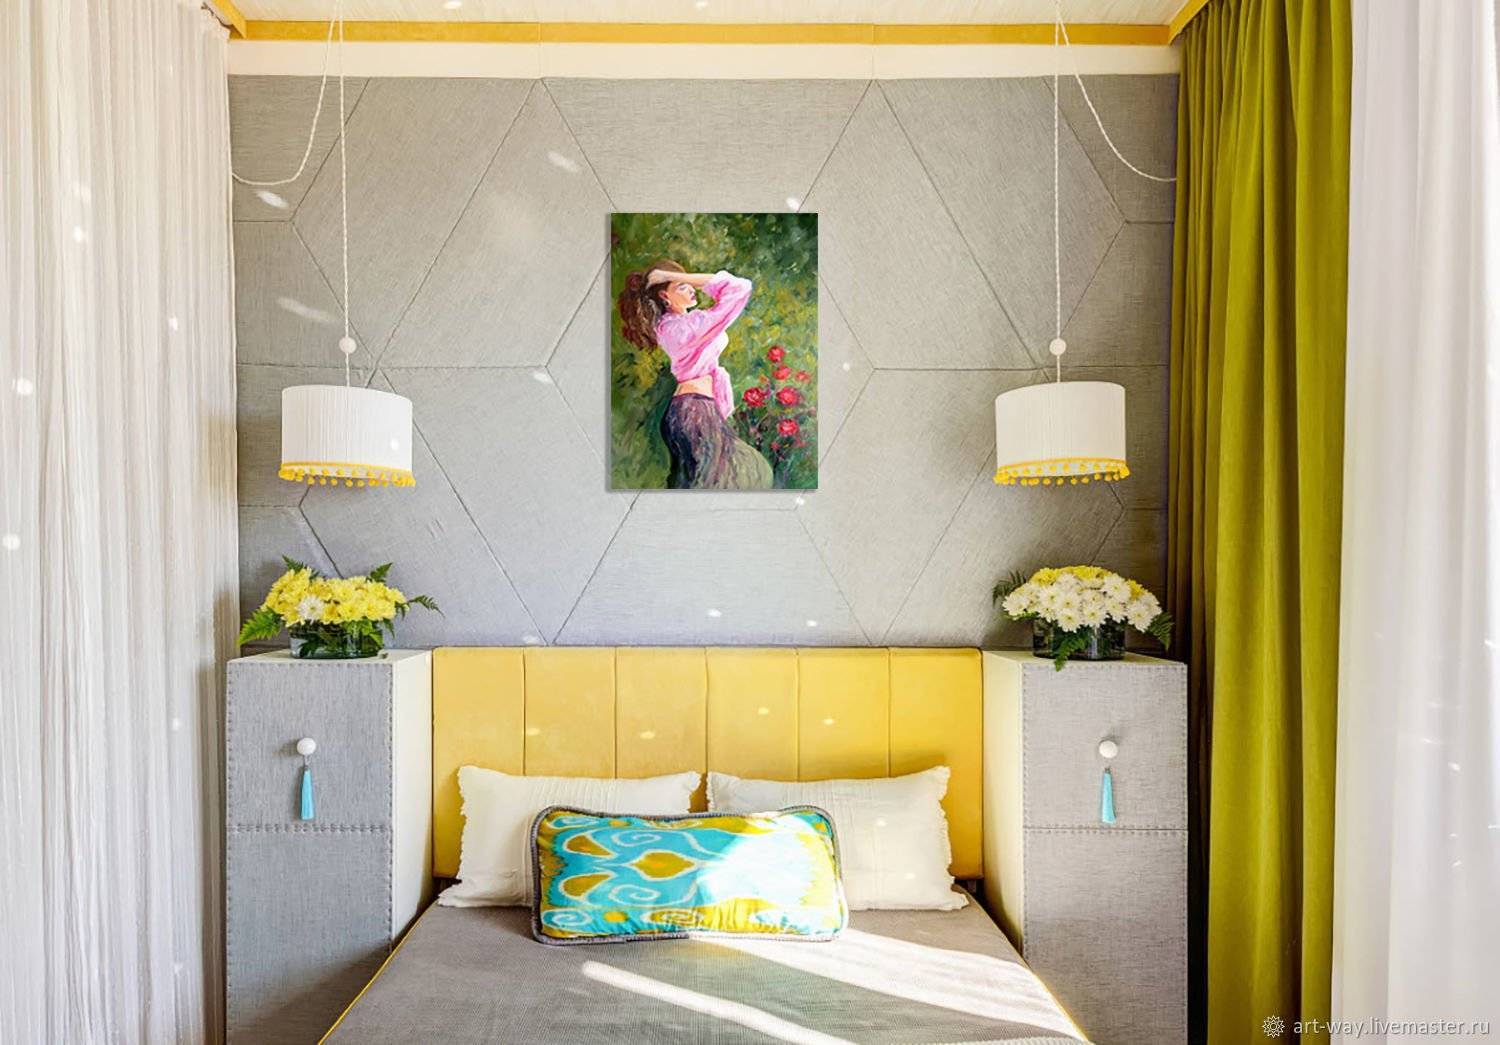 Лучшая спальня 10 кв м дизайн, фото, правила оформления и рекомендации